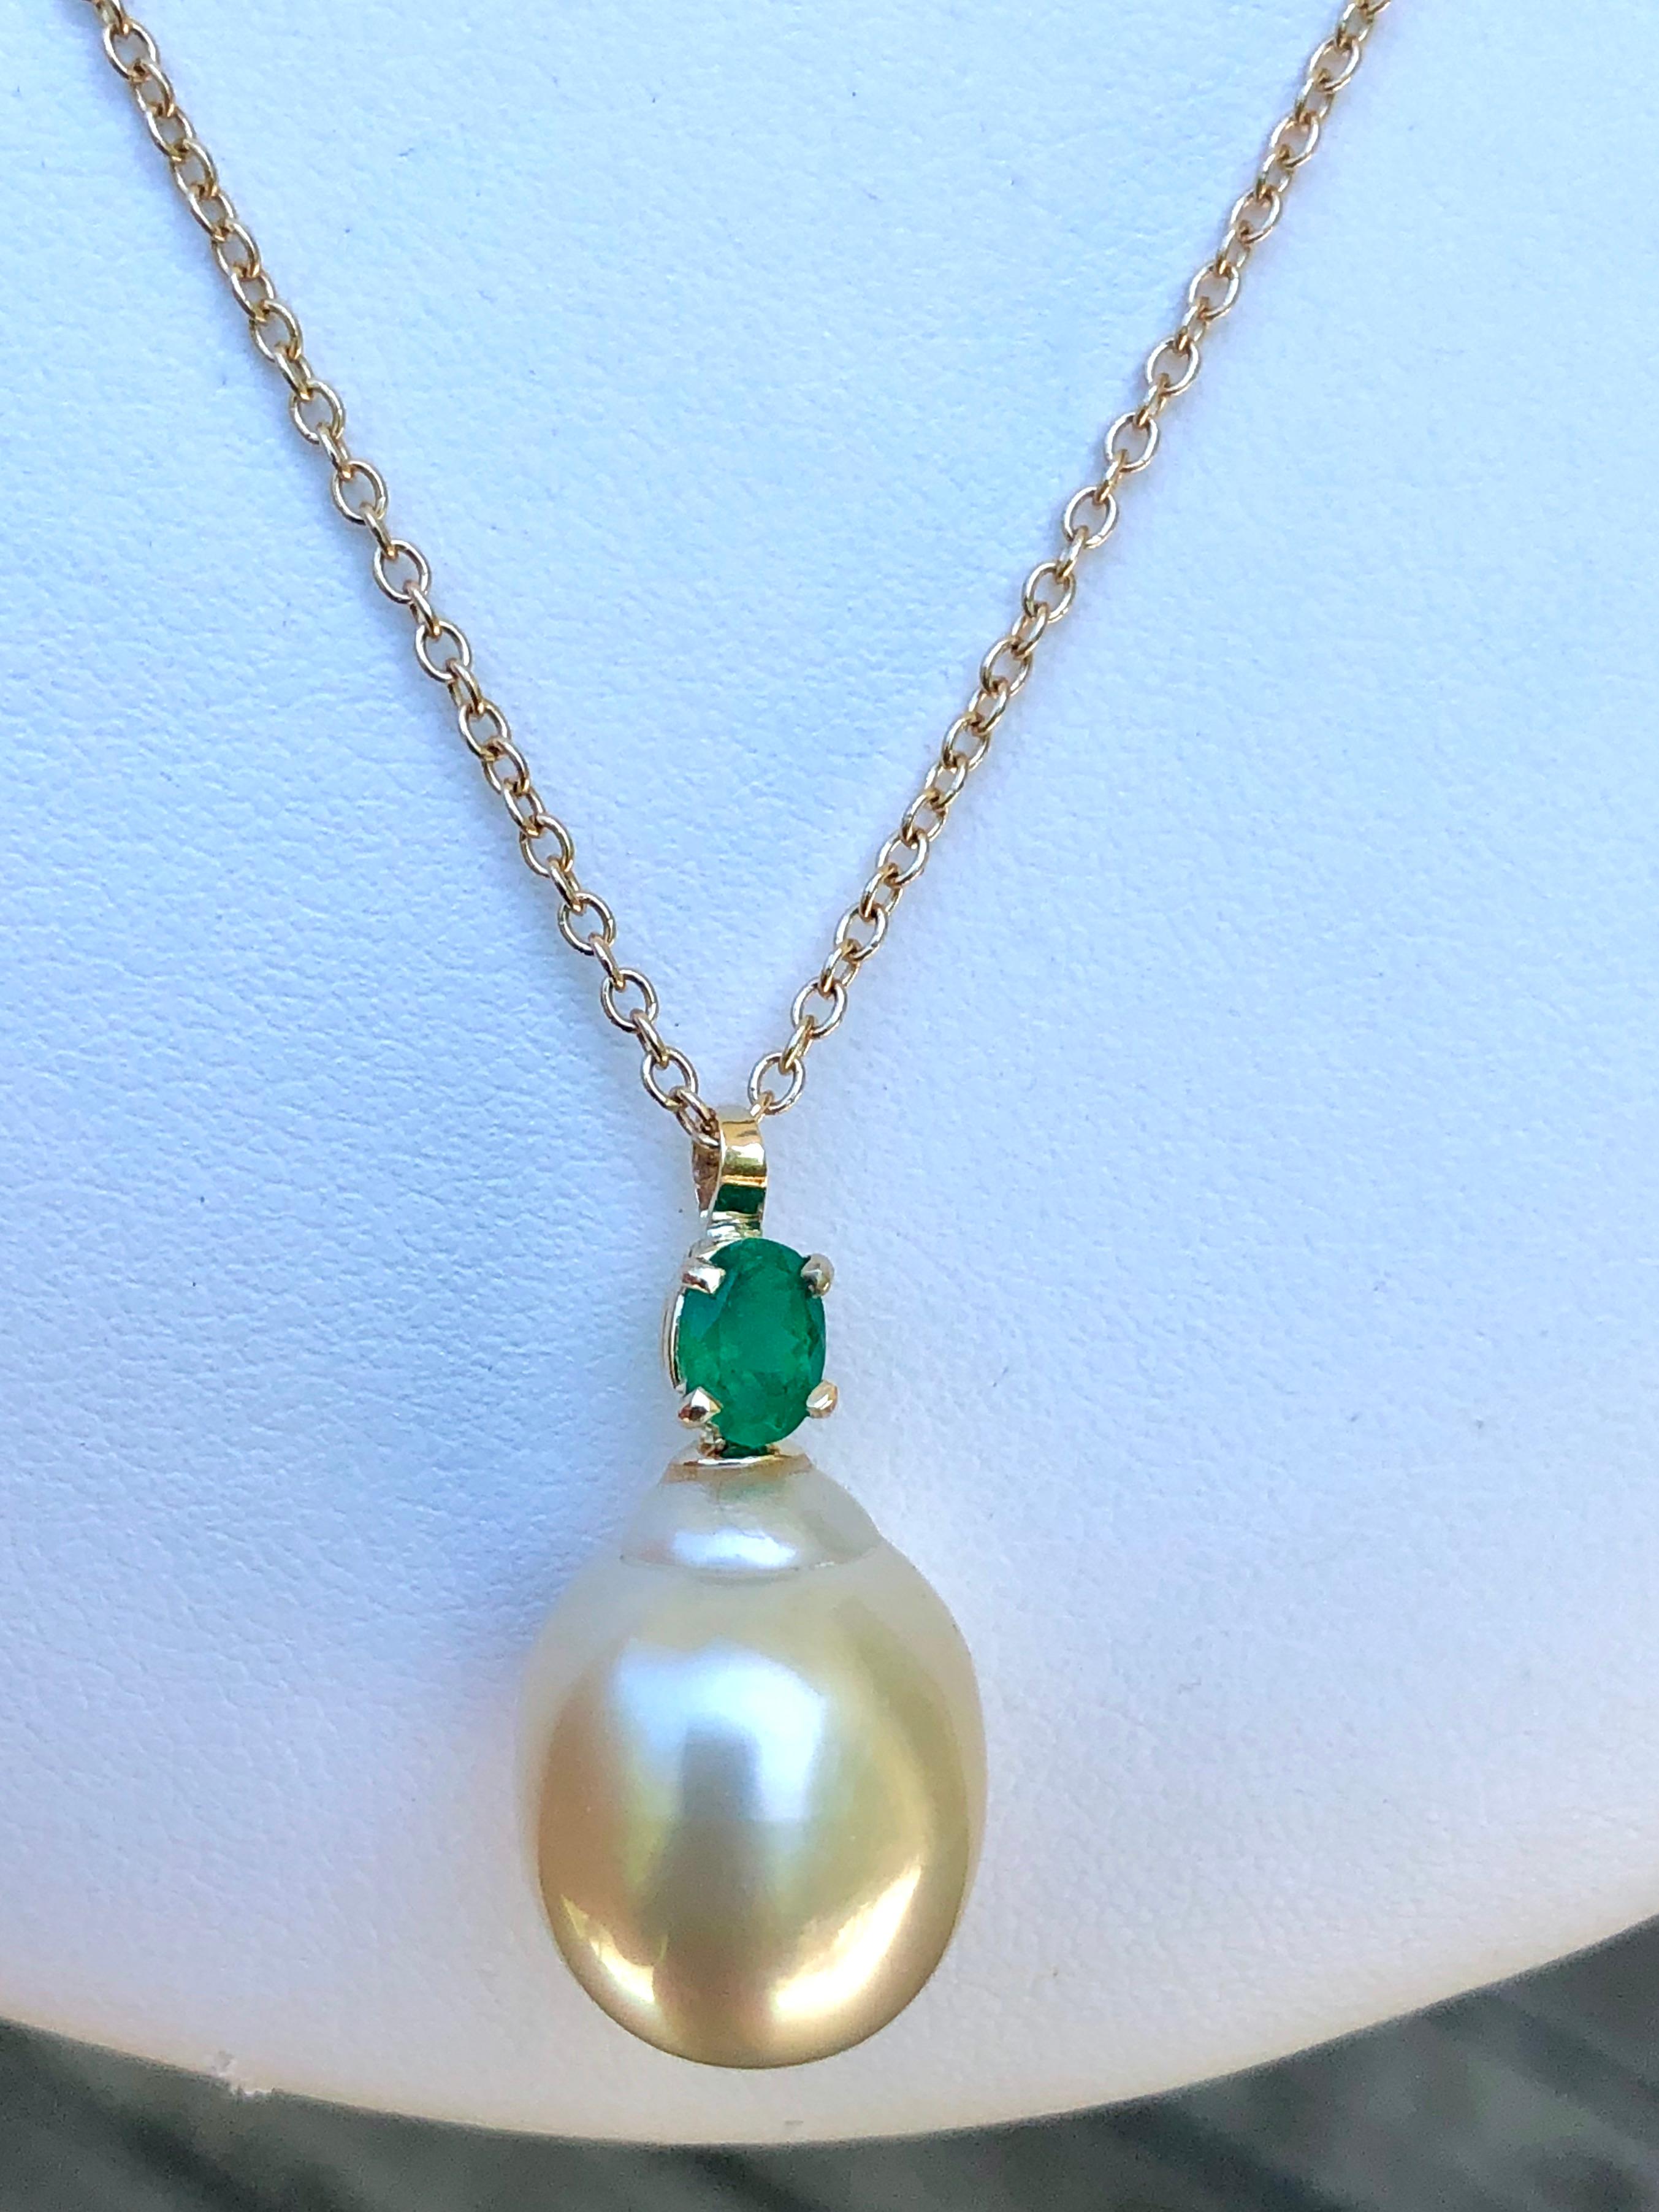 Emerald South Sea Pearl Pendant Necklace 18 Karat 5